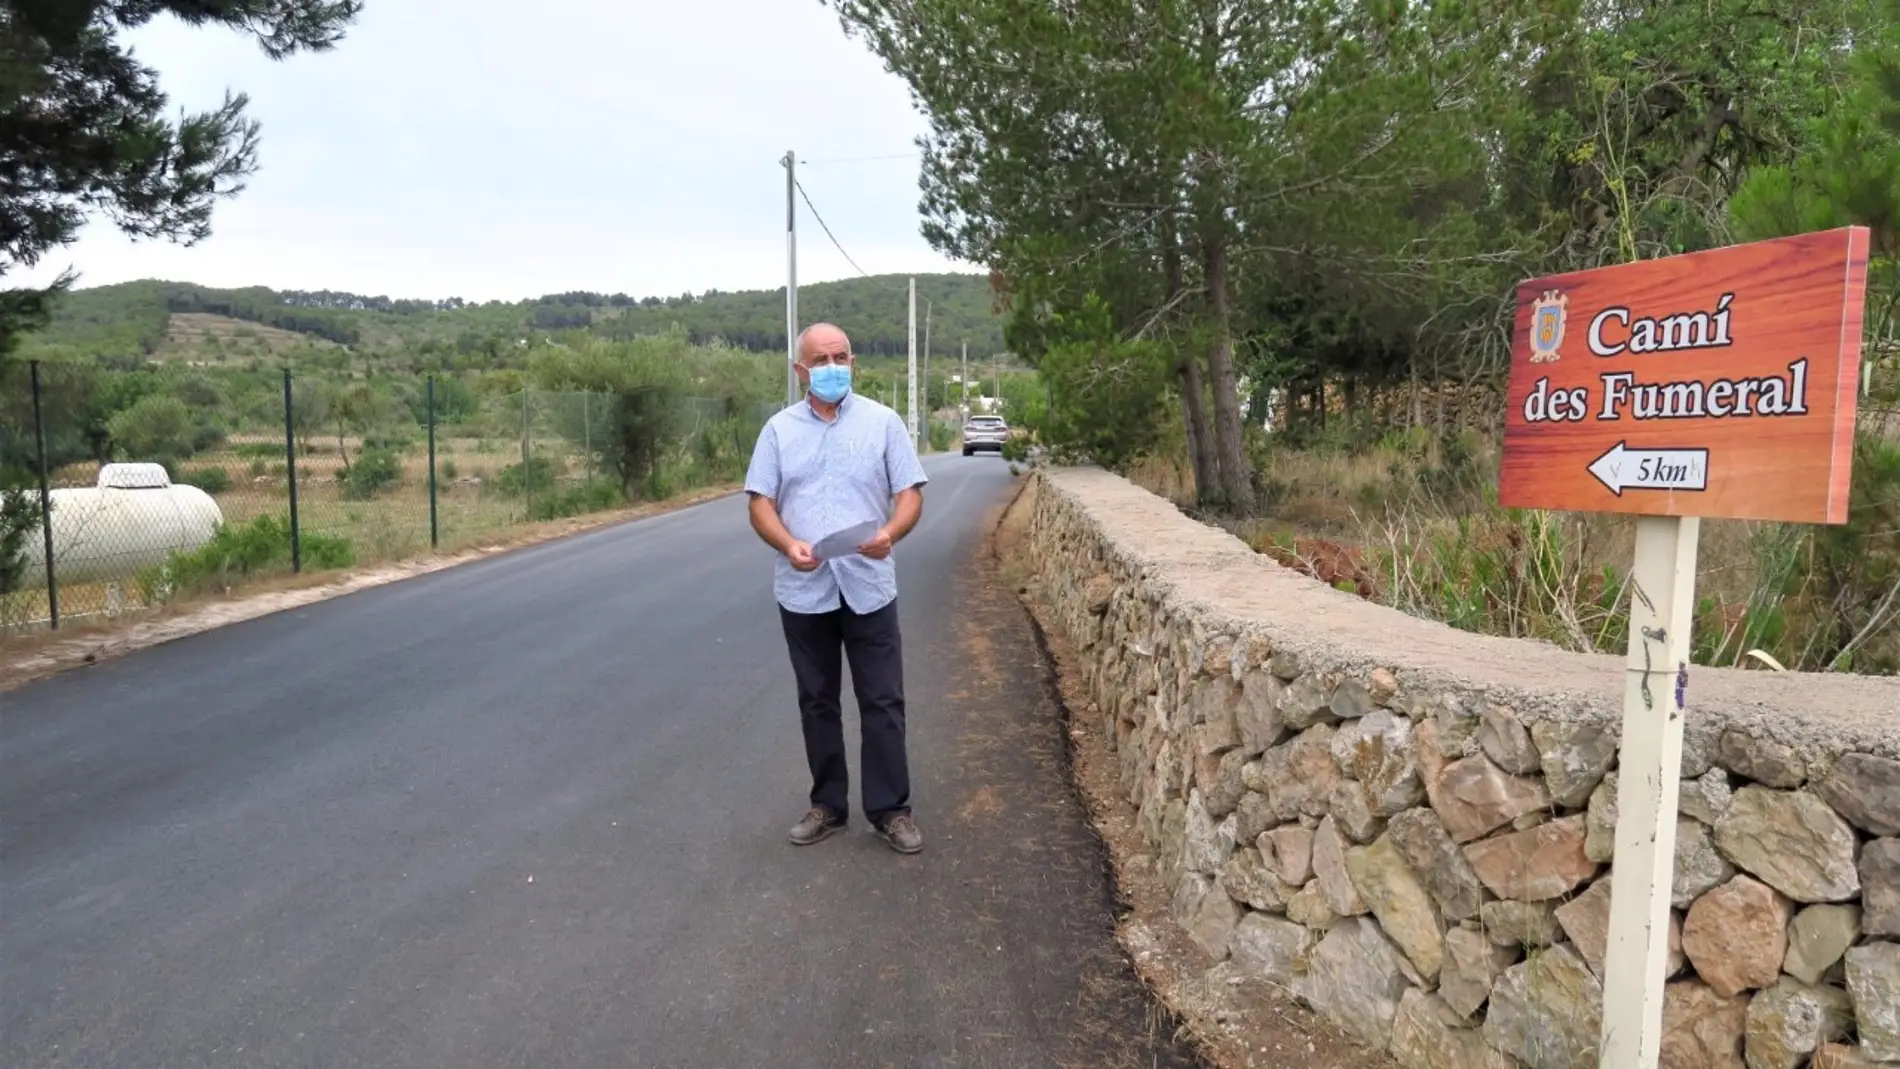 Sant Antoni finaliza las obras del proyecto de asfaltado en el municipio